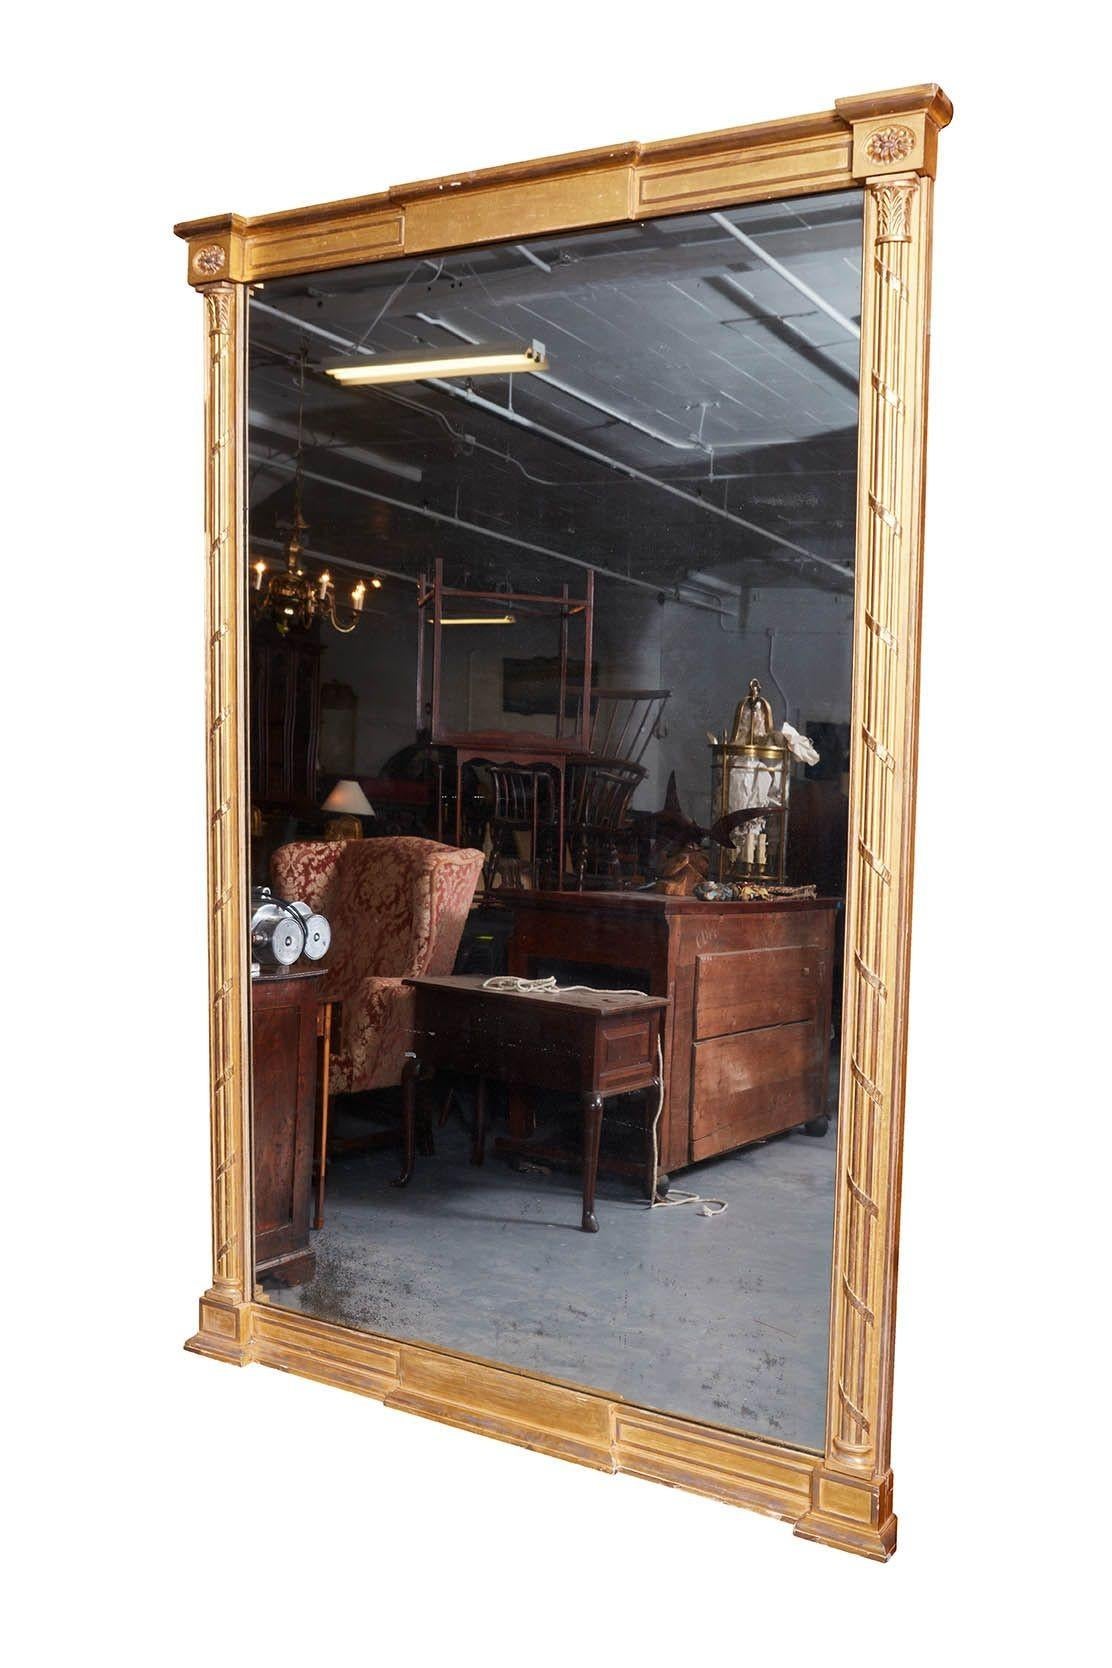 Importante paire de miroirs en bois doré de George III, d'une taille substantielle. Le fronton est orné de paterae ovales insérées sur des colonnes corinthiennes nervurées avec des bandes de ruban, la base est conçue de la même manière, le tout en